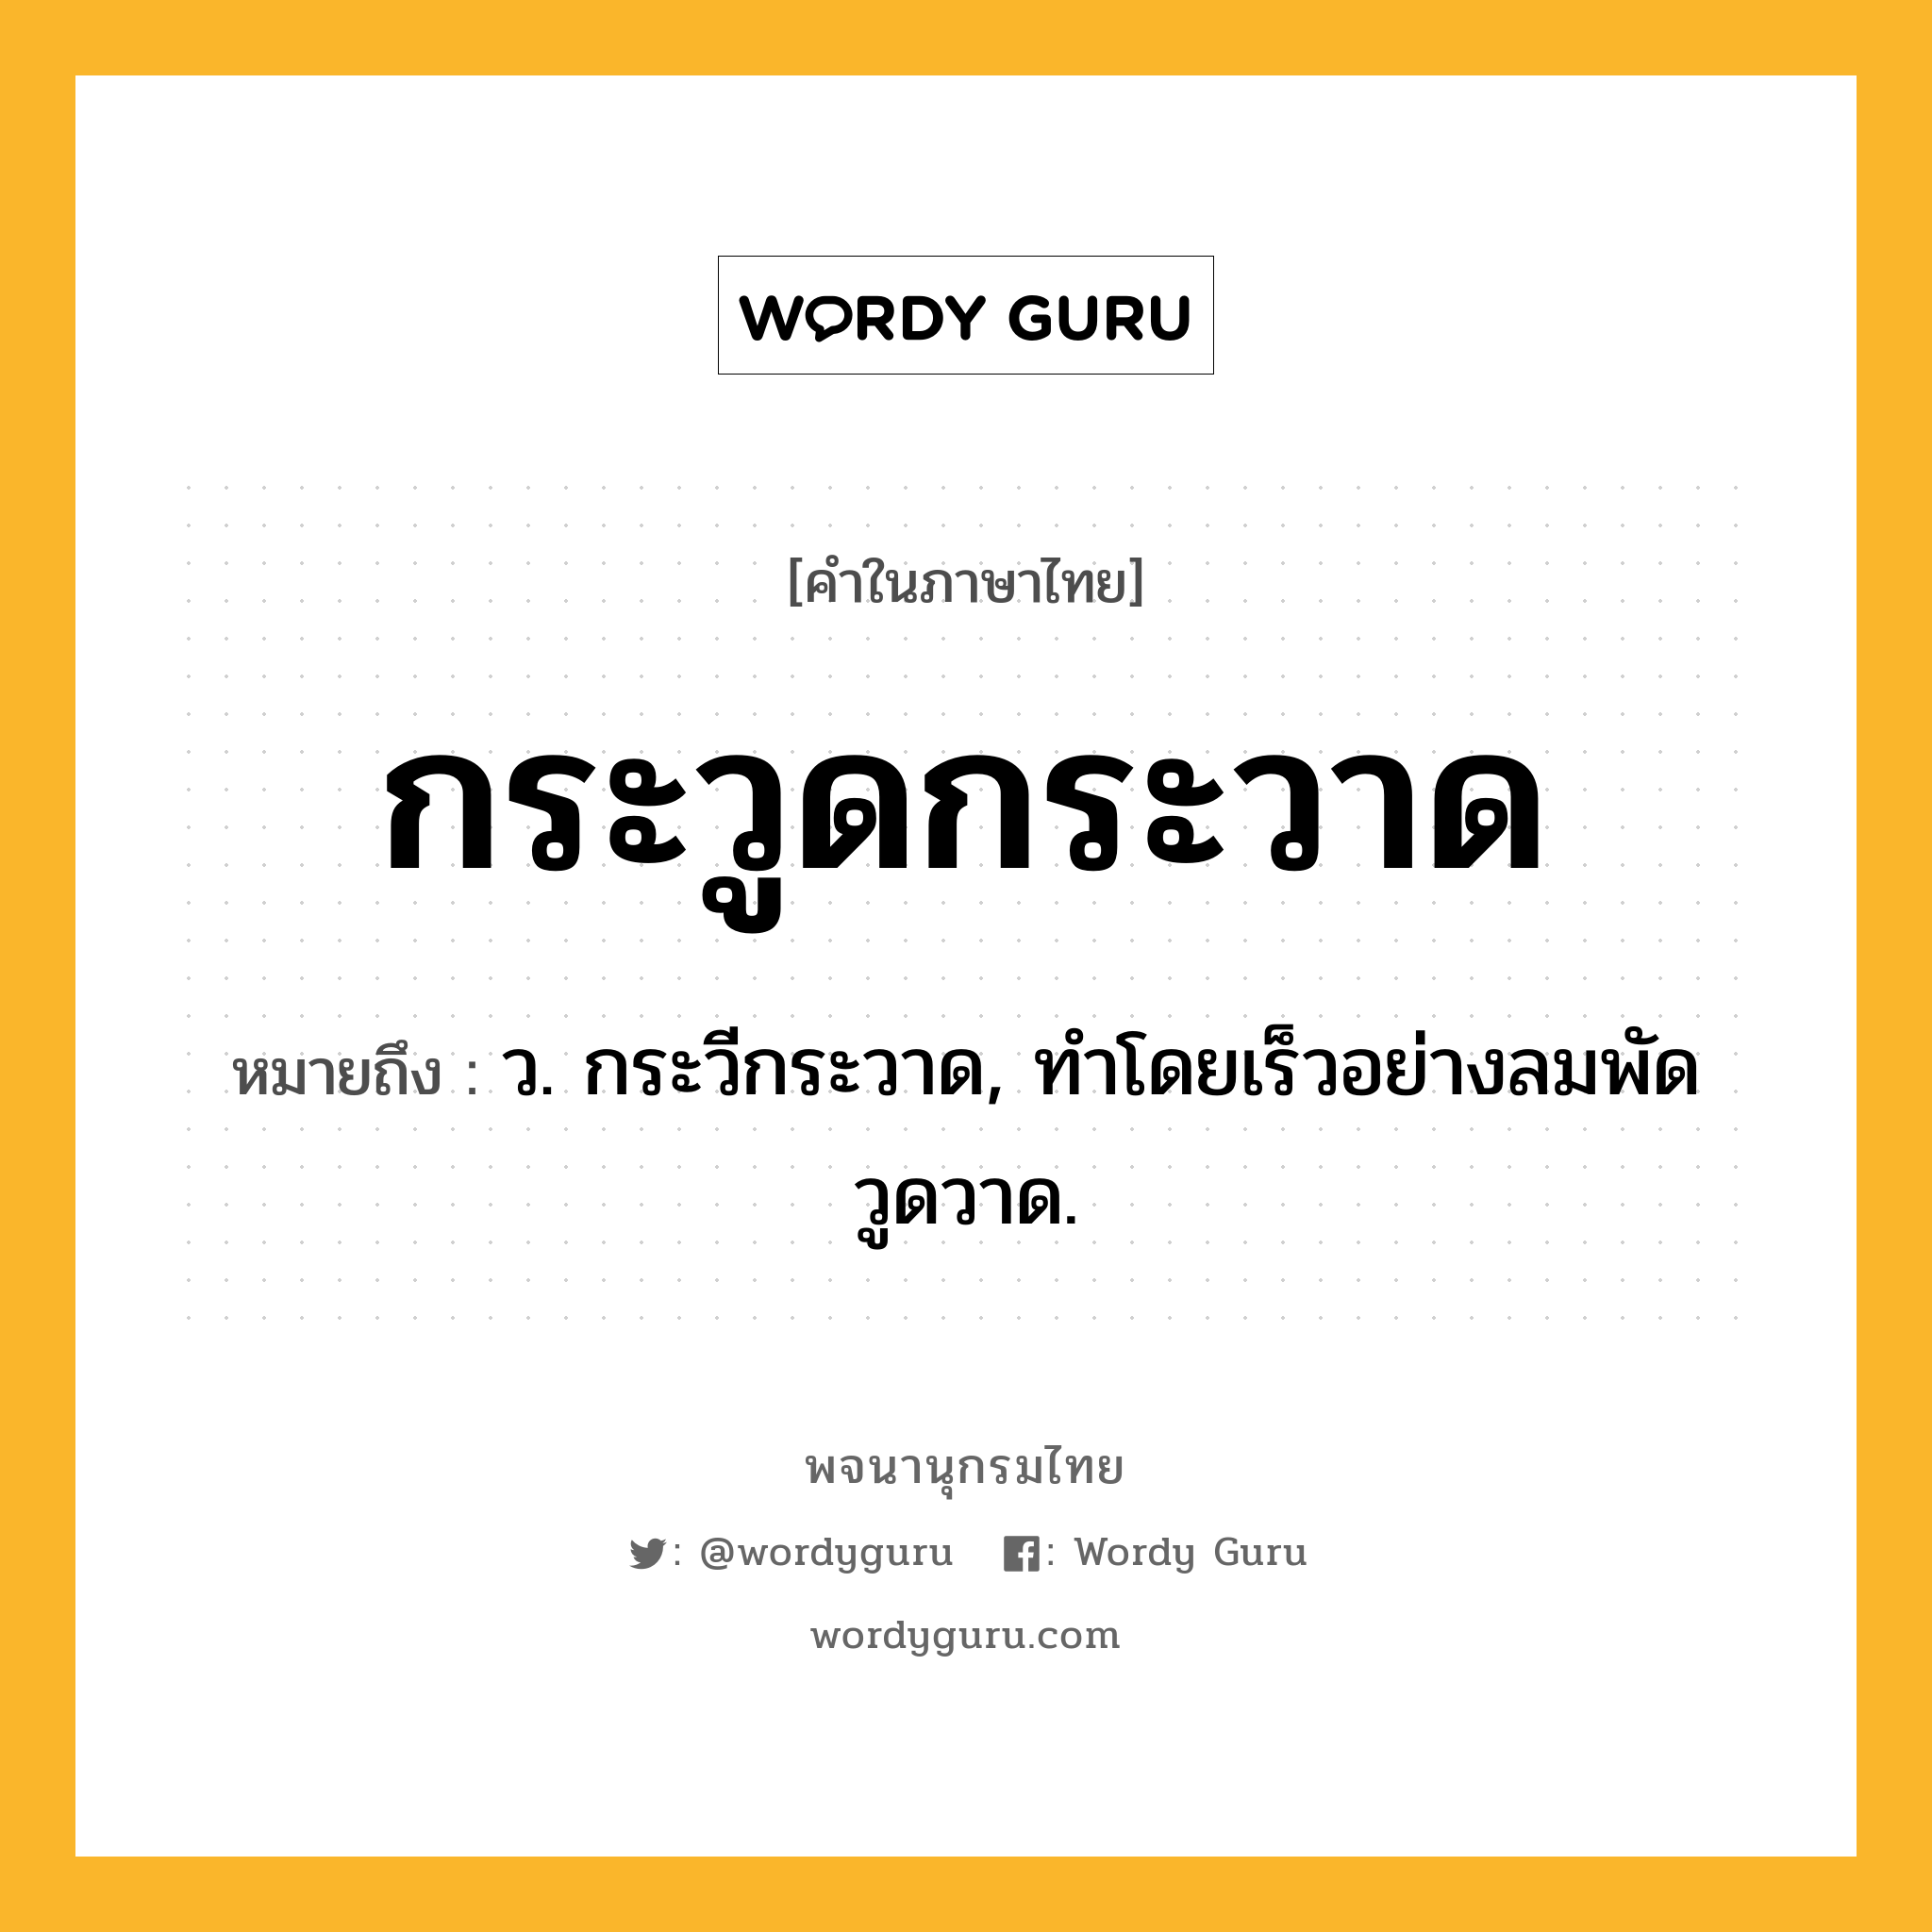 กระวูดกระวาด ความหมาย หมายถึงอะไร?, คำในภาษาไทย กระวูดกระวาด หมายถึง ว. กระวีกระวาด, ทําโดยเร็วอย่างลมพัดวูดวาด.